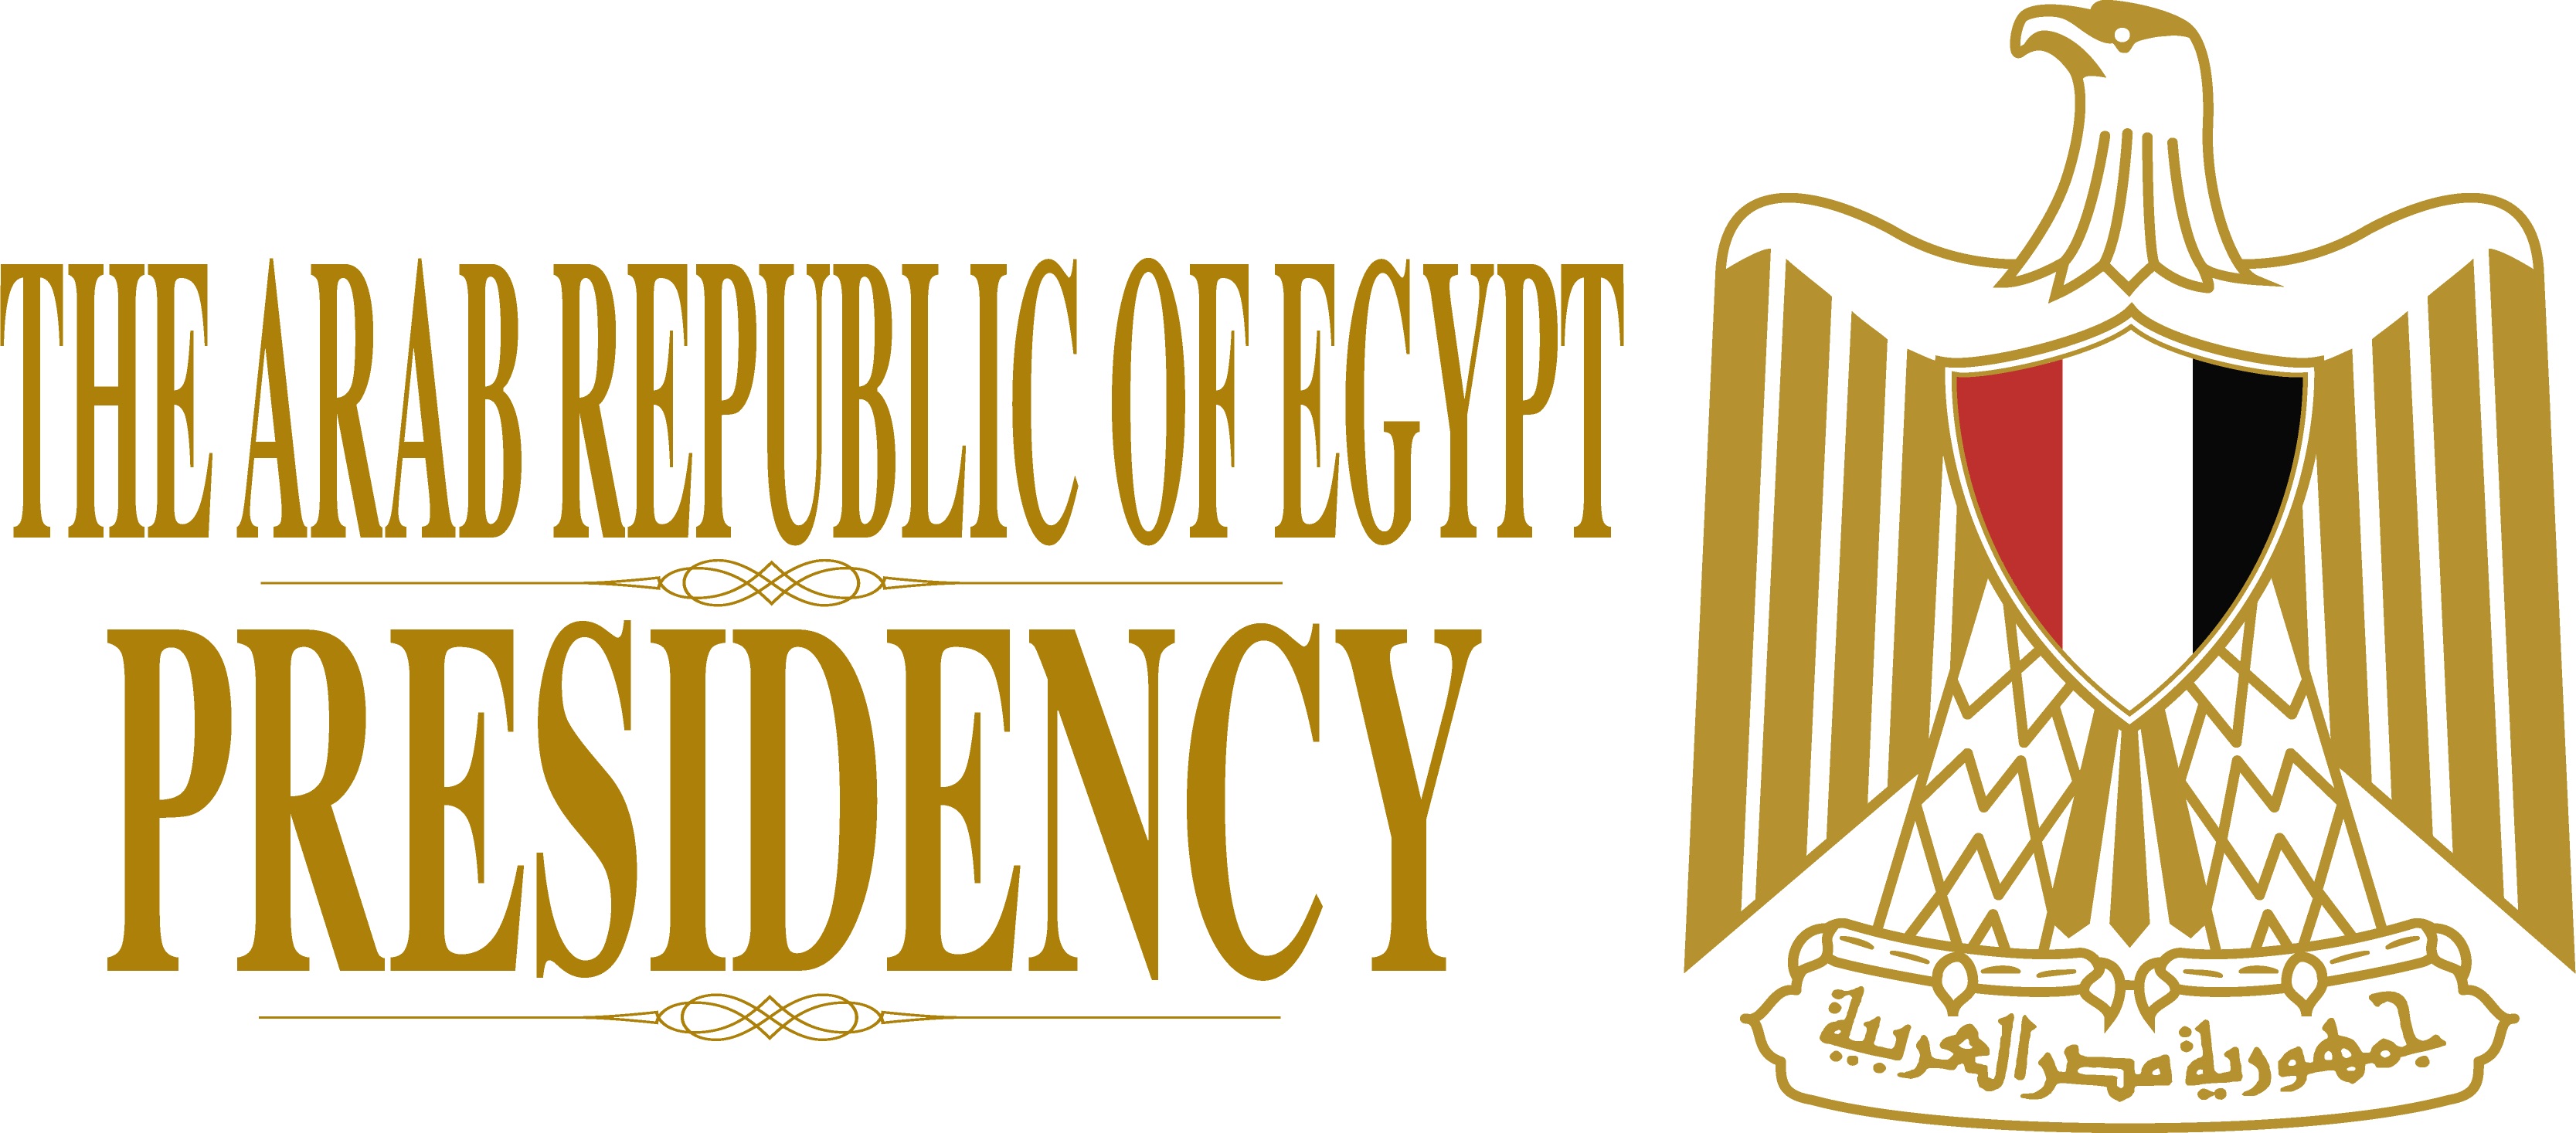 La Presidencia, La República Árabe de Egipto